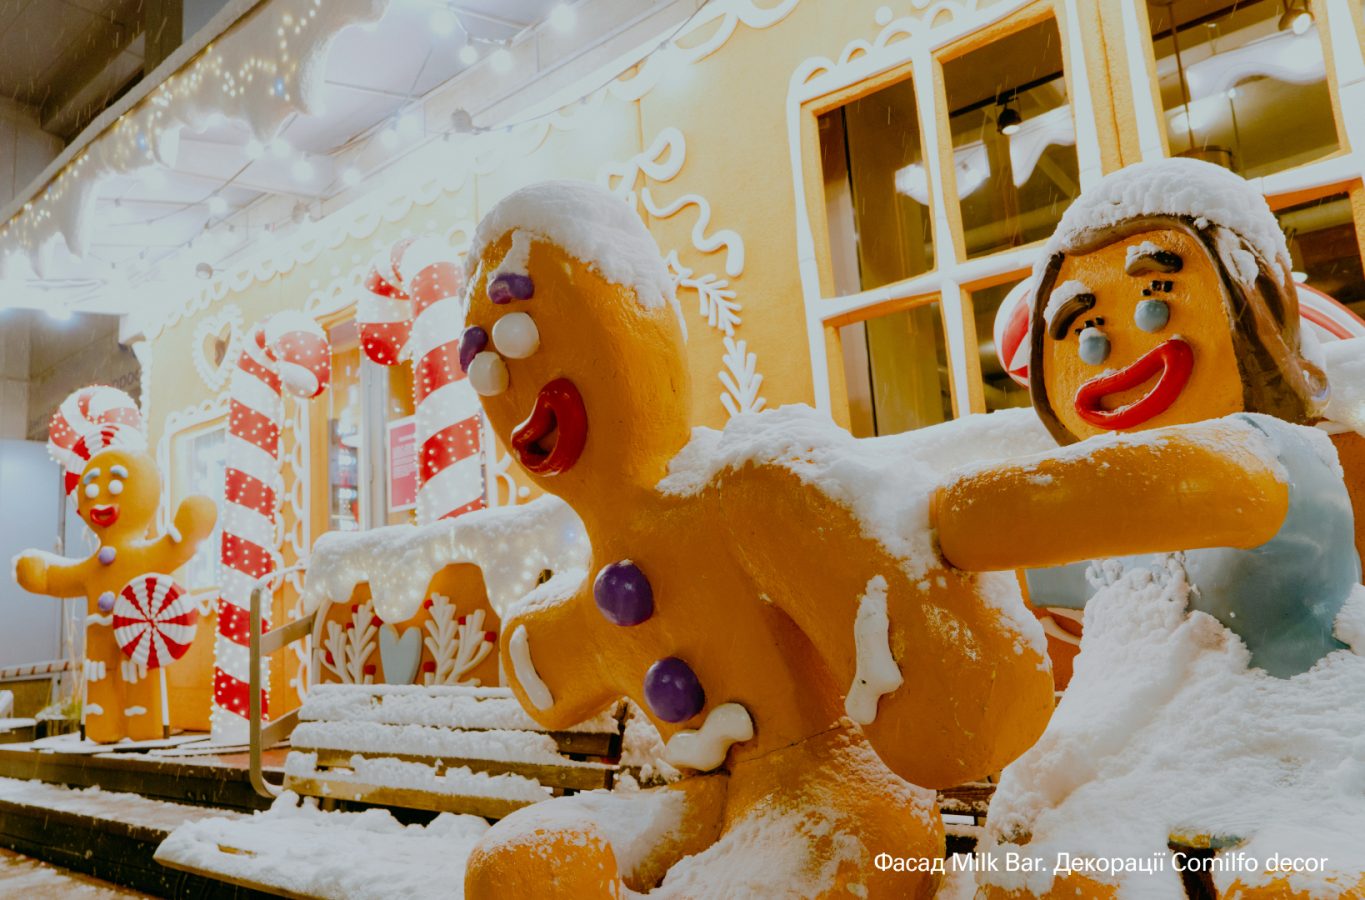 Projector Institute випустив фотобанк світлин столиці на новорічні свята